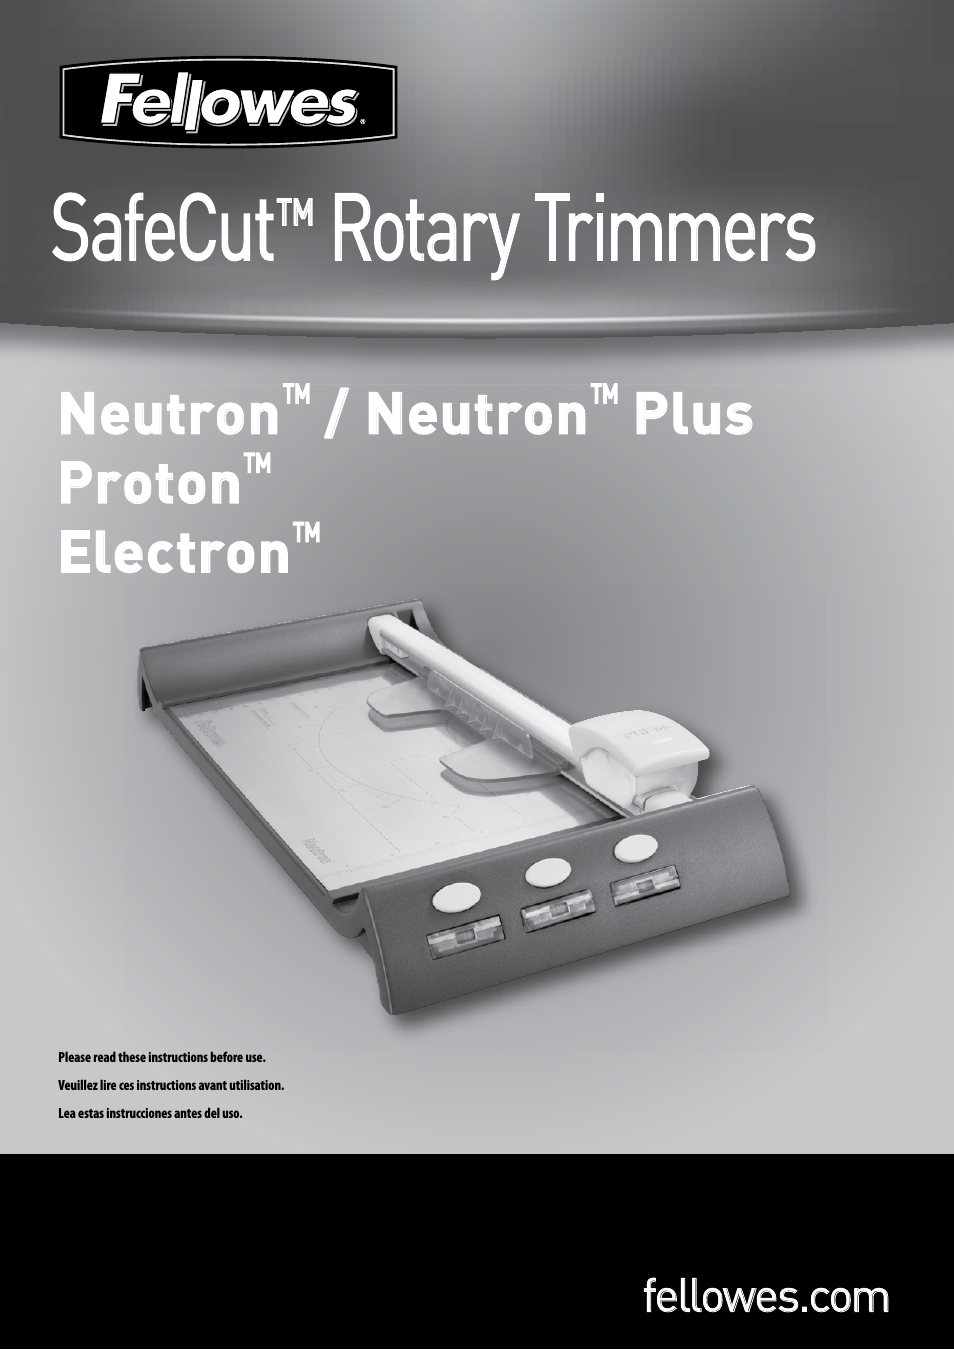 SafeCut Neutron Plus